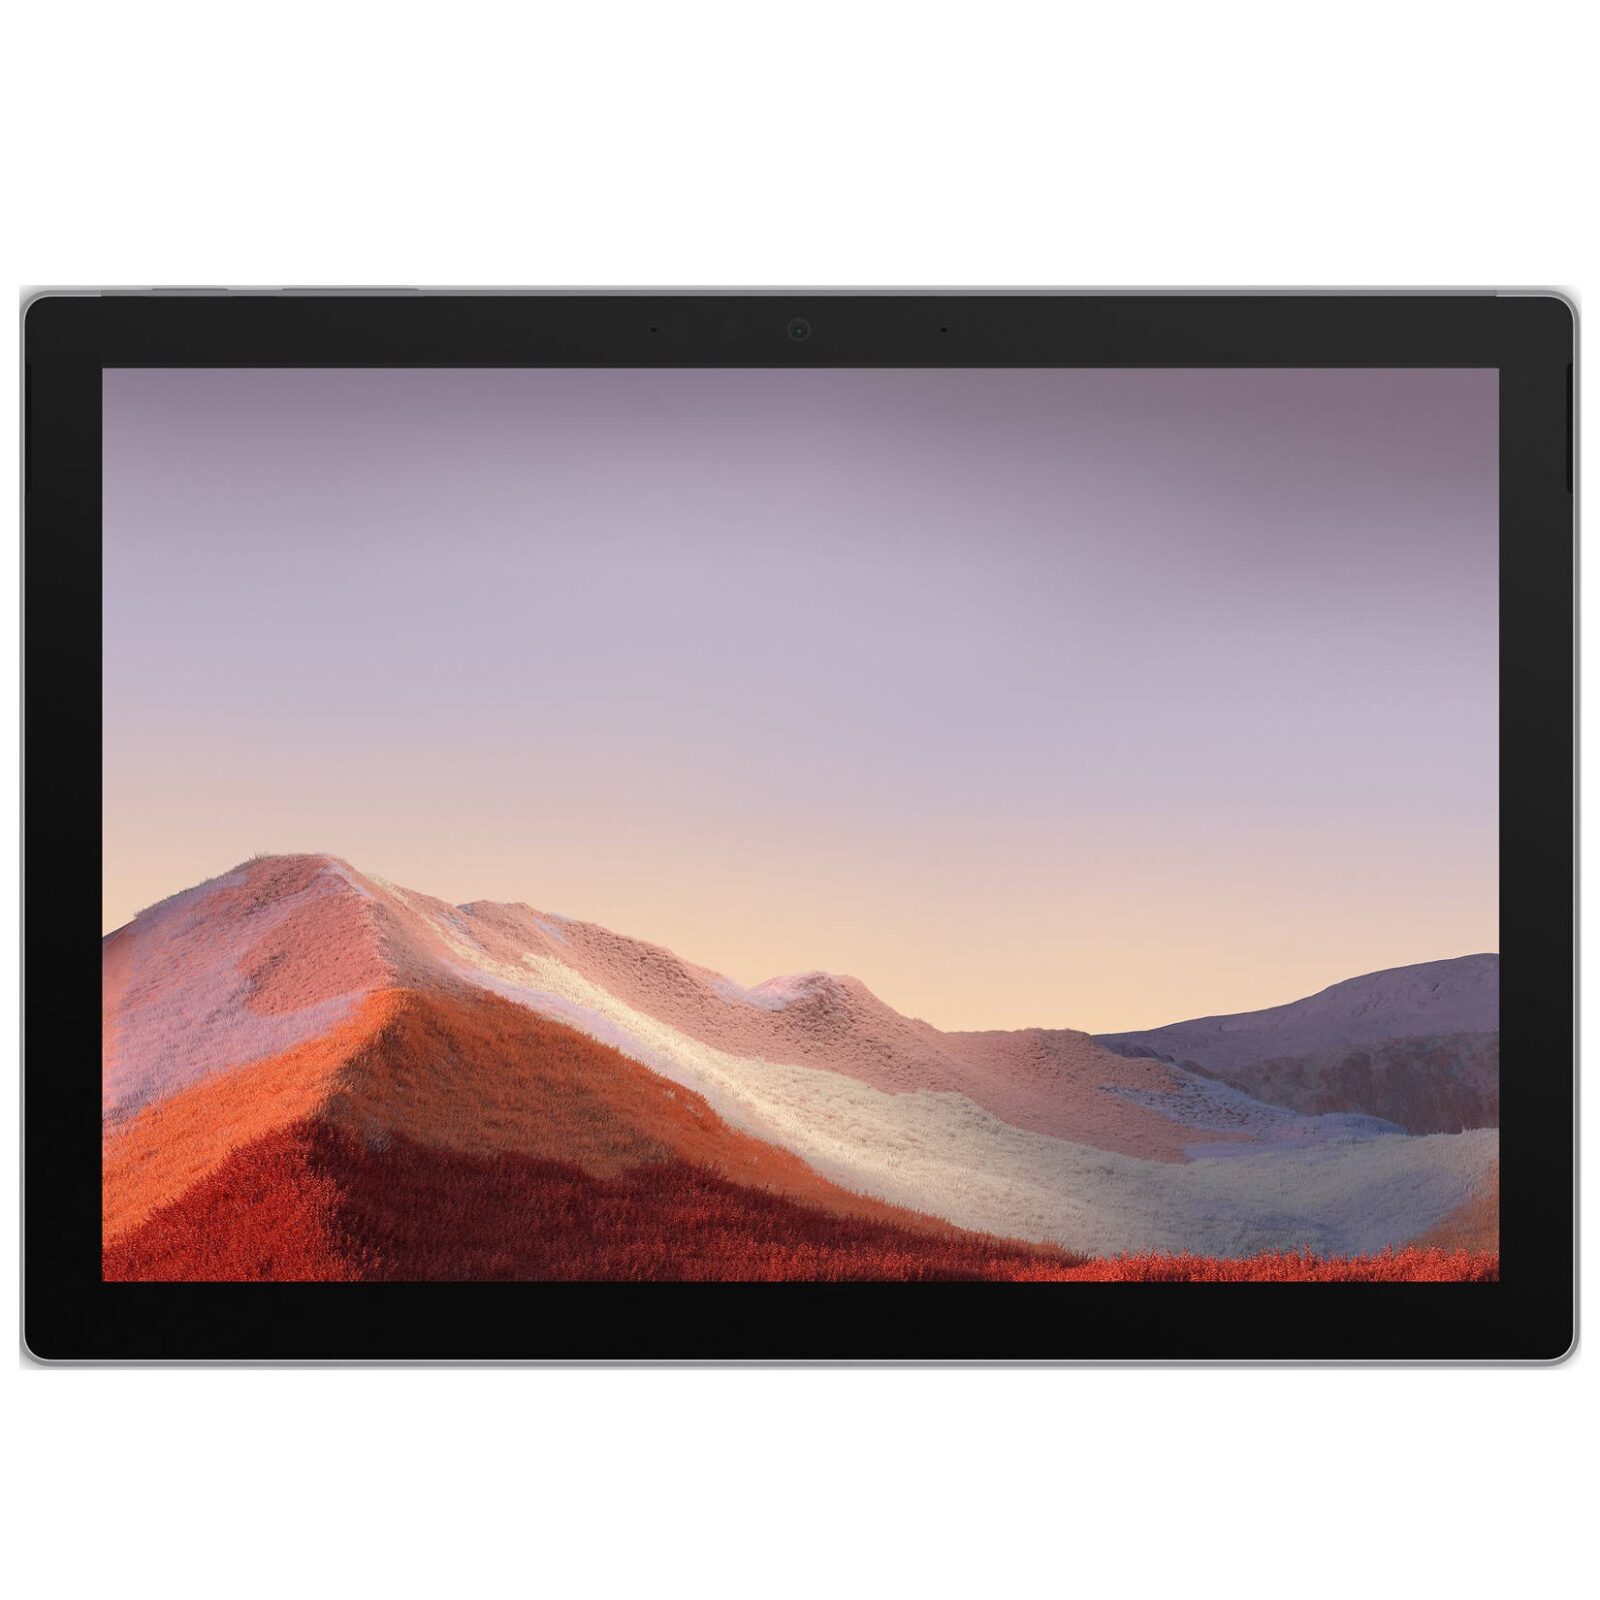 تبلت مایکروسافت مدل Surface Pro 7 – C ظرفیت 256 گیگابایت